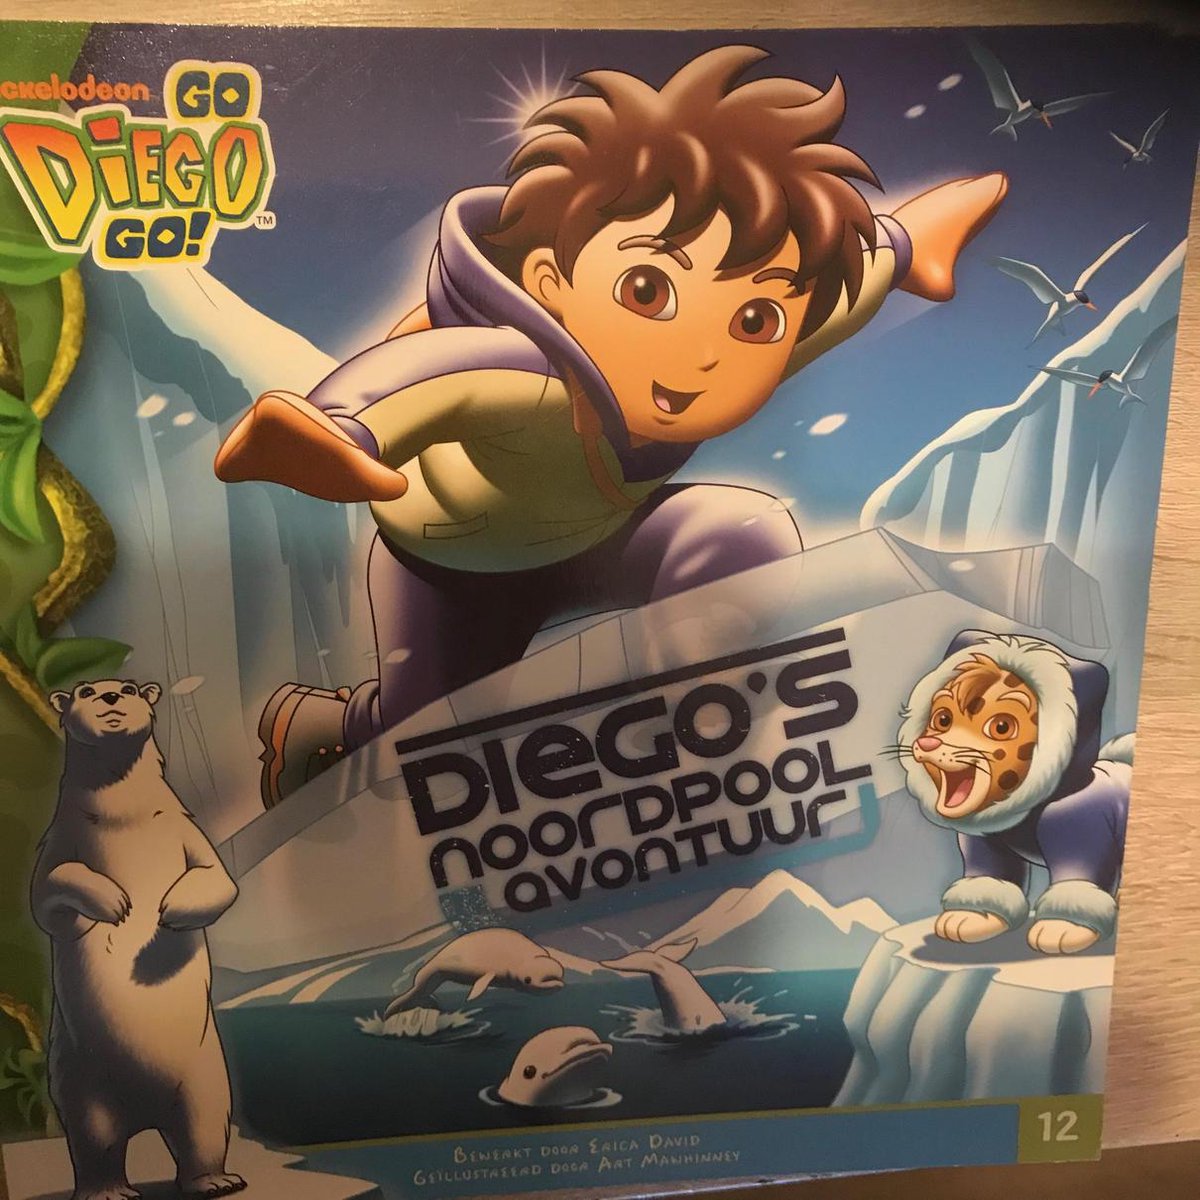 Diego's Noordpoolavontuur / Diego